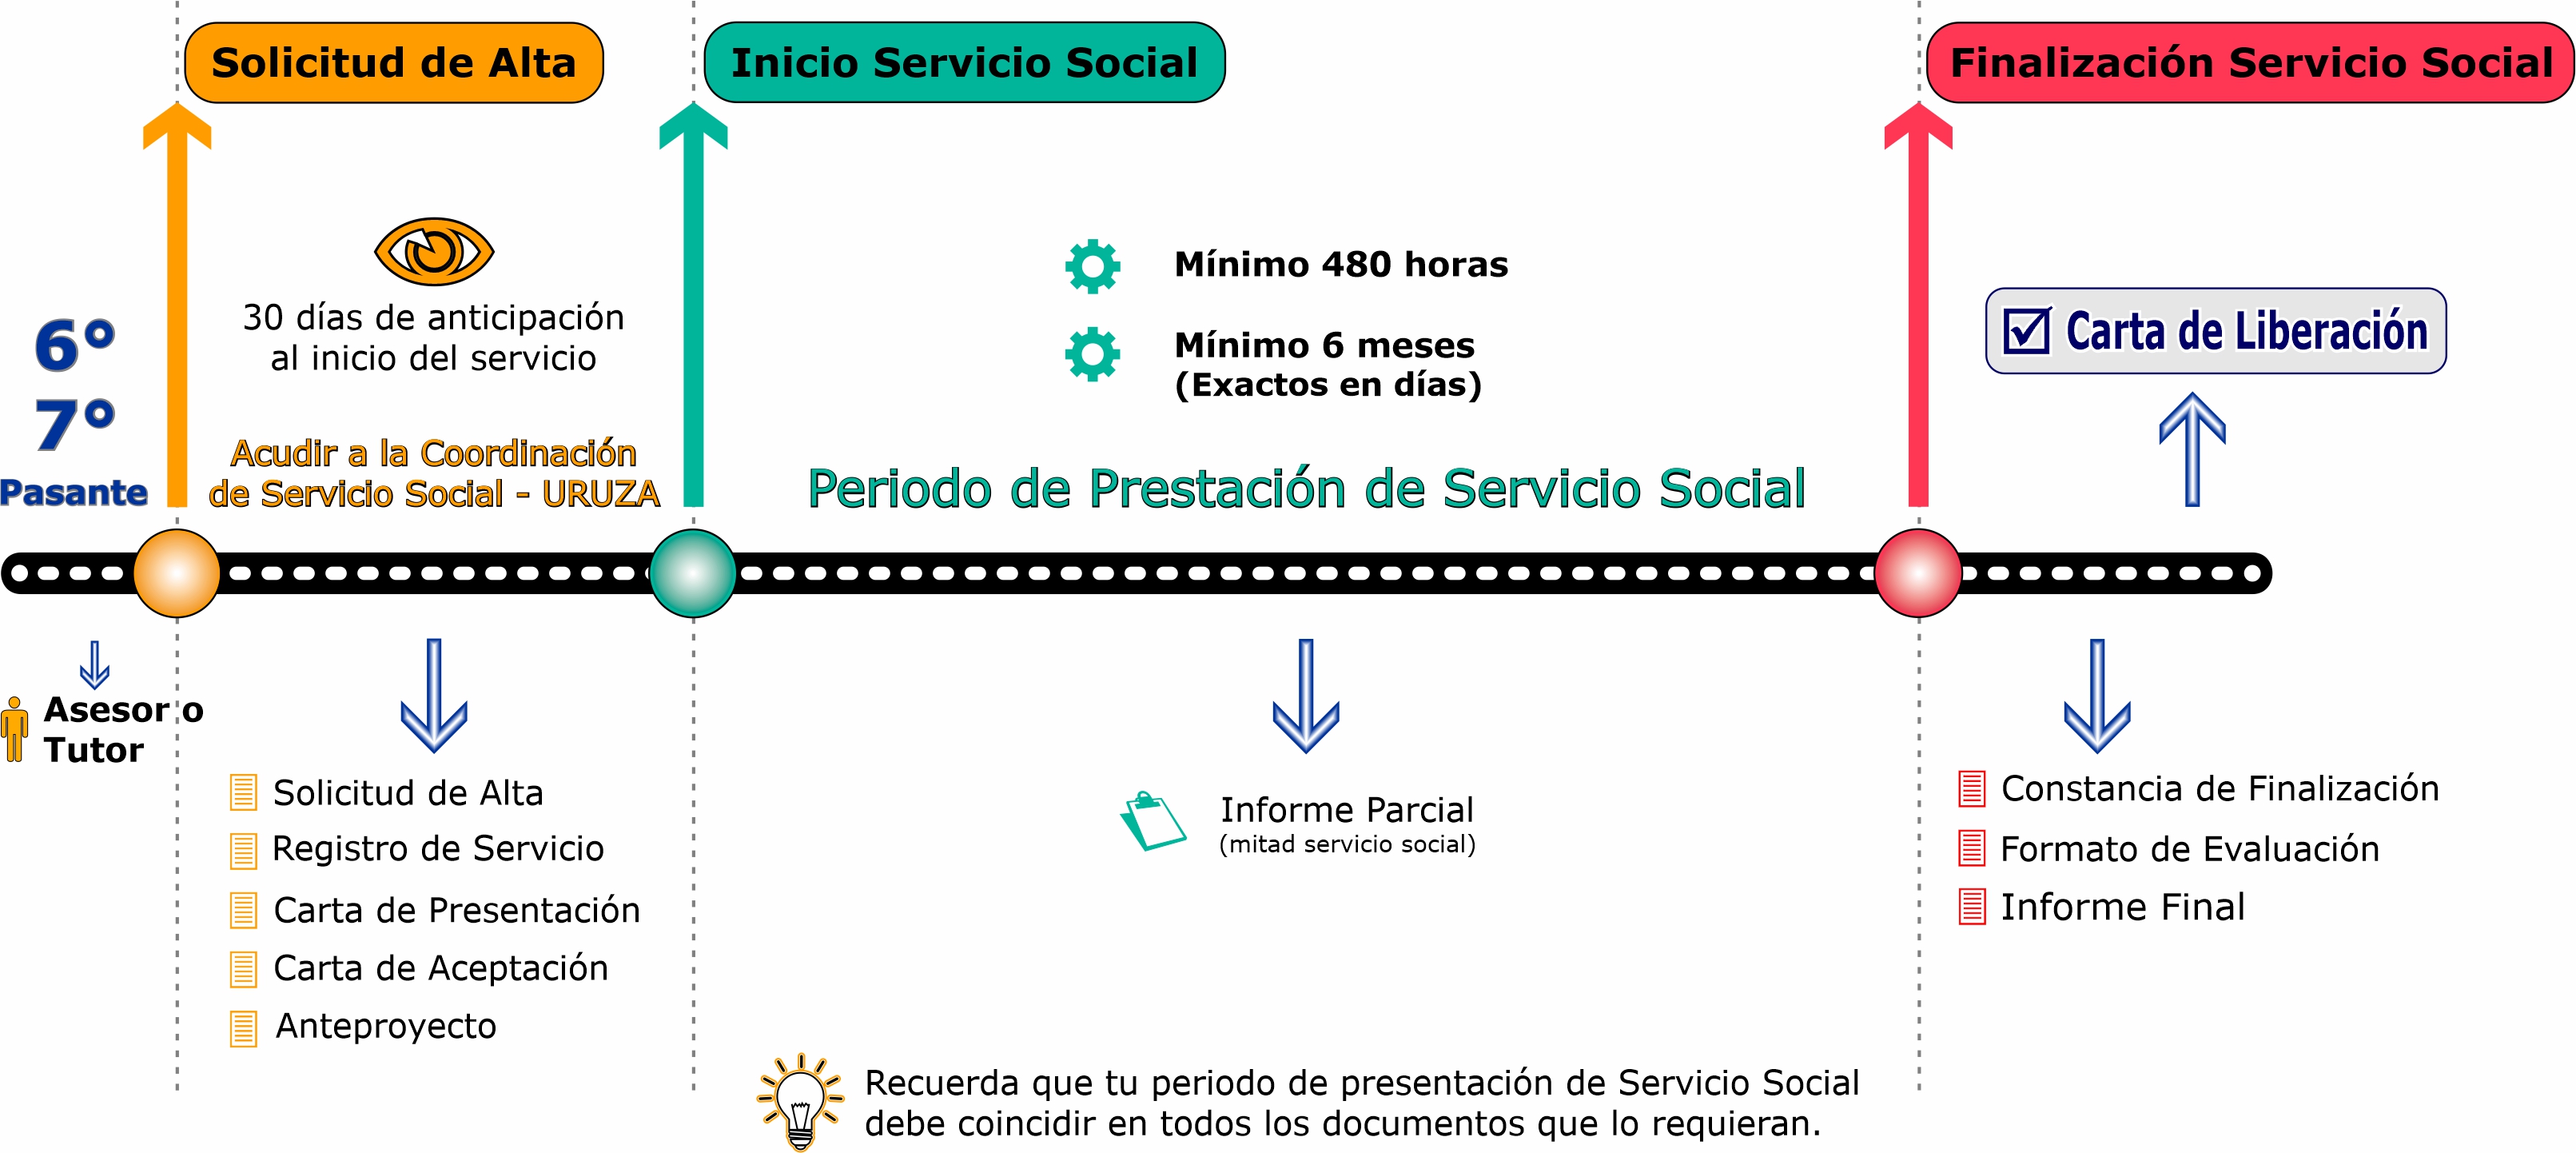 ServicioSocial16-x2.jpg (921 KB)